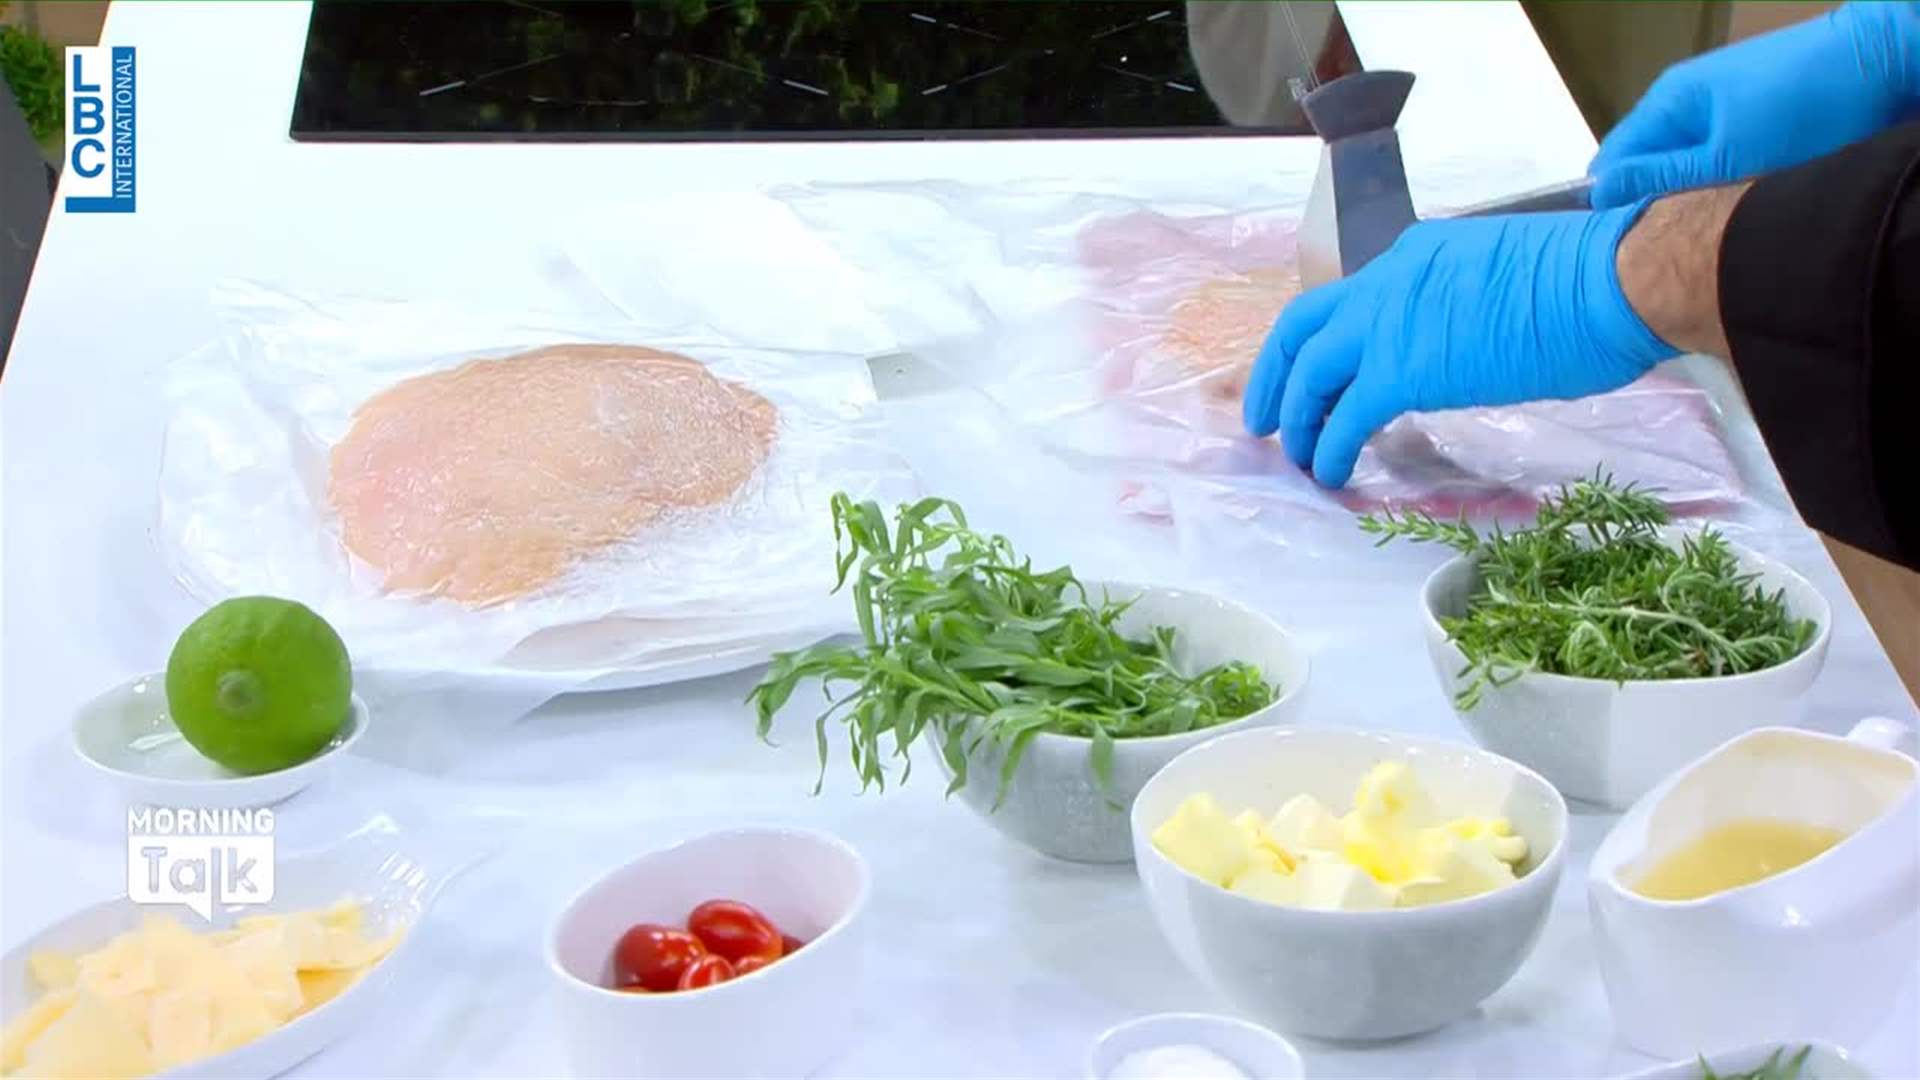 وصفة مميّزة... حضّروا طبق الـChicken with Tarragon Butter على طريقة الشيف حنا طويل! (فيديو)